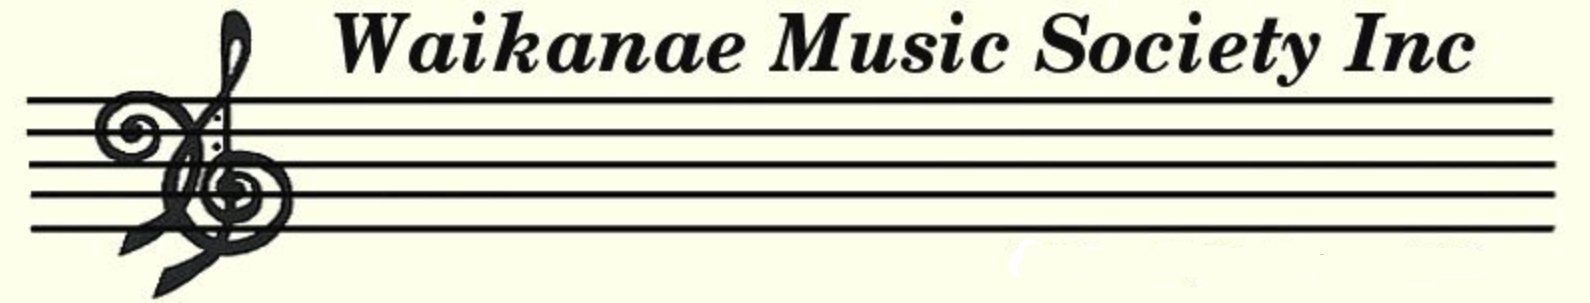 Waikanae Music Society Logo